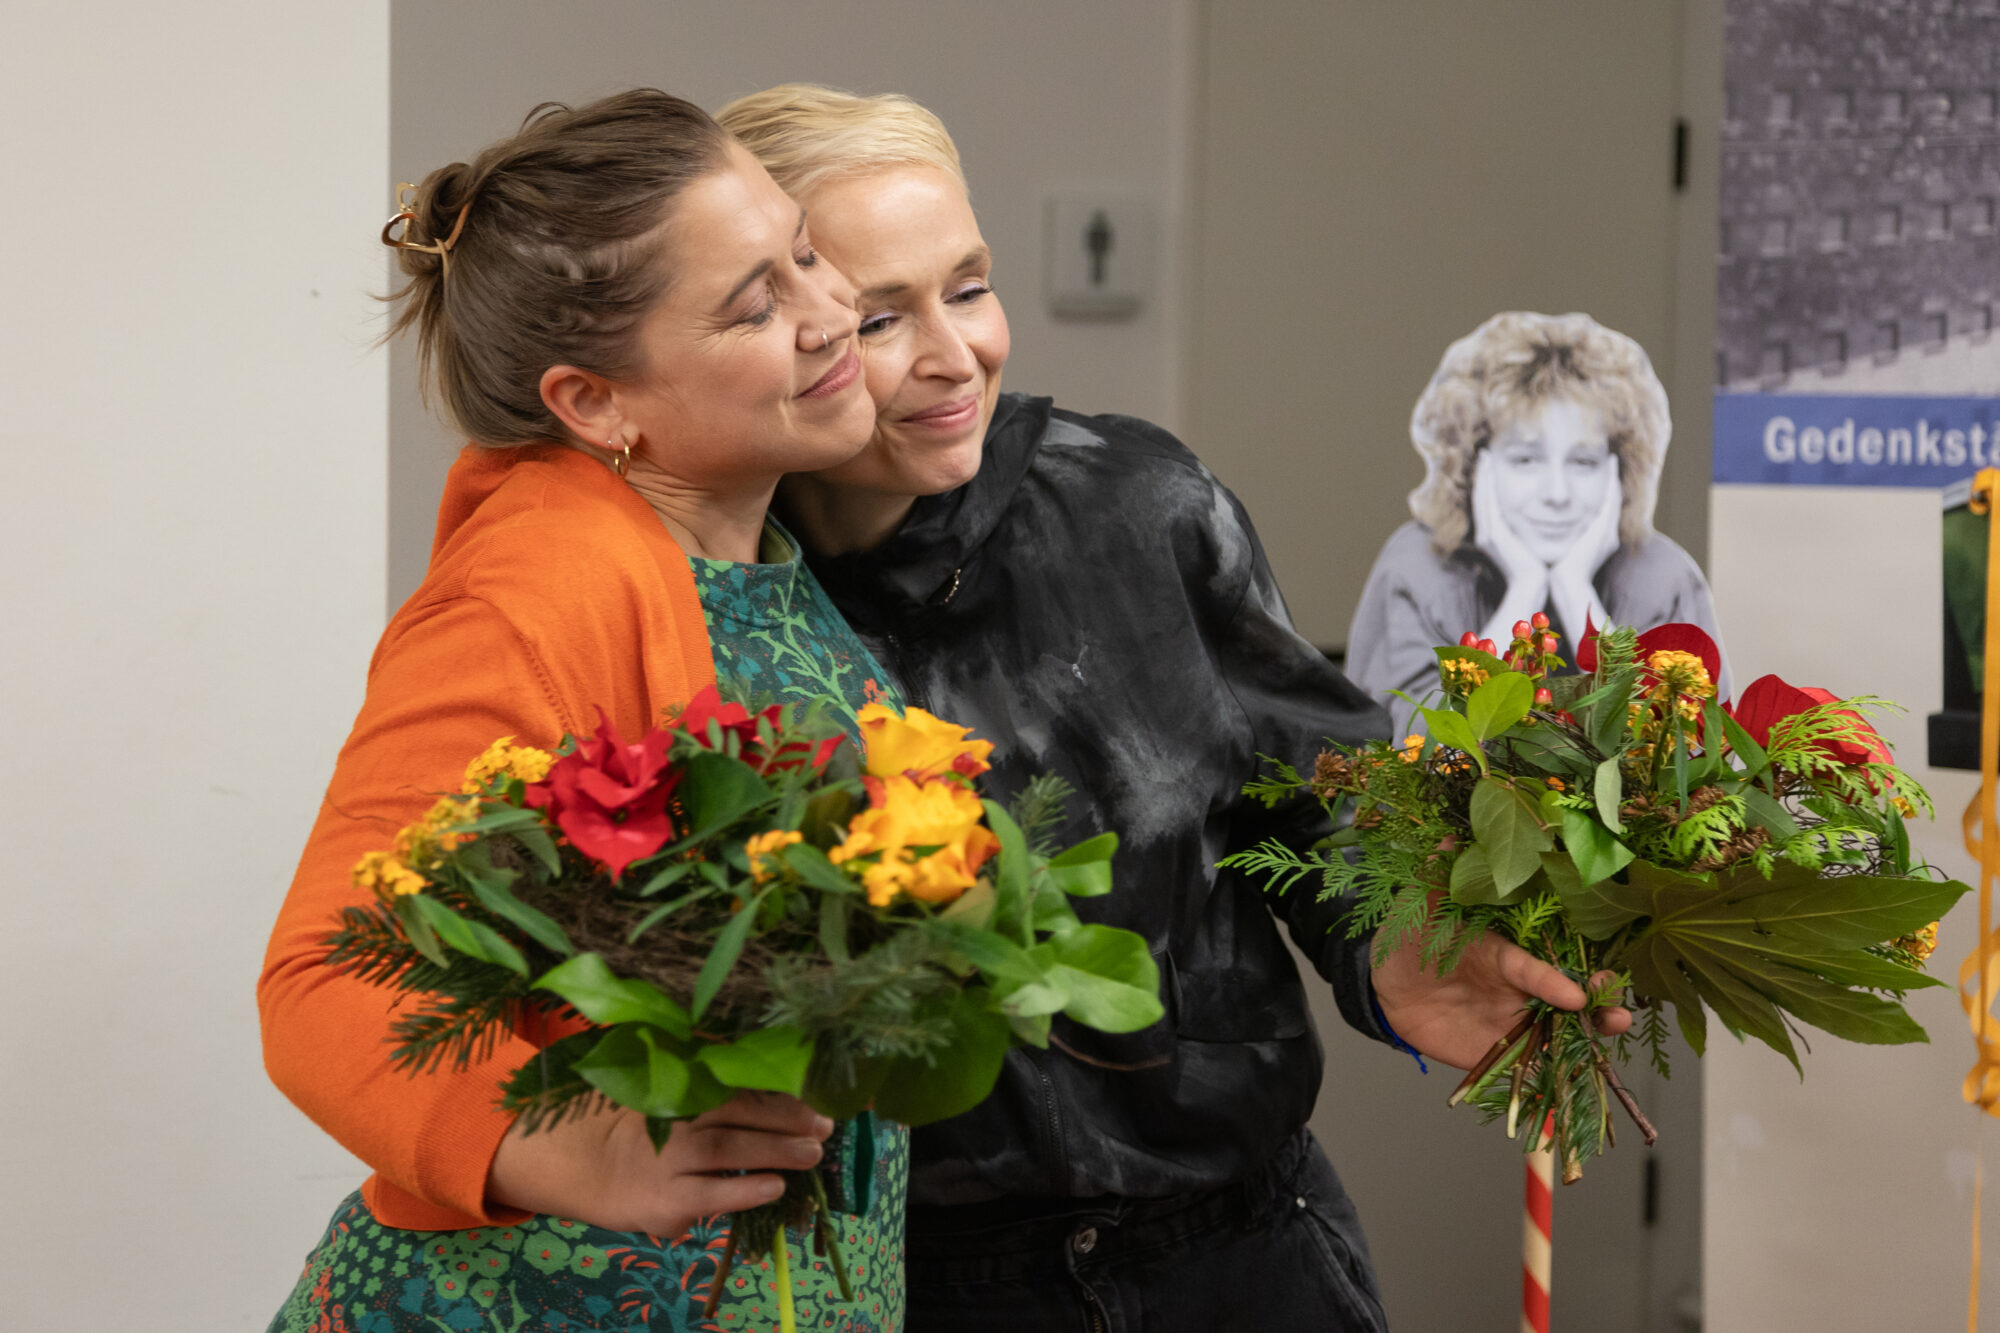 Figurenspielerin Julia Raab und Dramaturgin Sandra Bringer nach der Auftakt-Veranstaltung zum 10-jährigen Jubiläum in der Gedenkstätte ROTER OCHSE; Foto: Julia Fenske